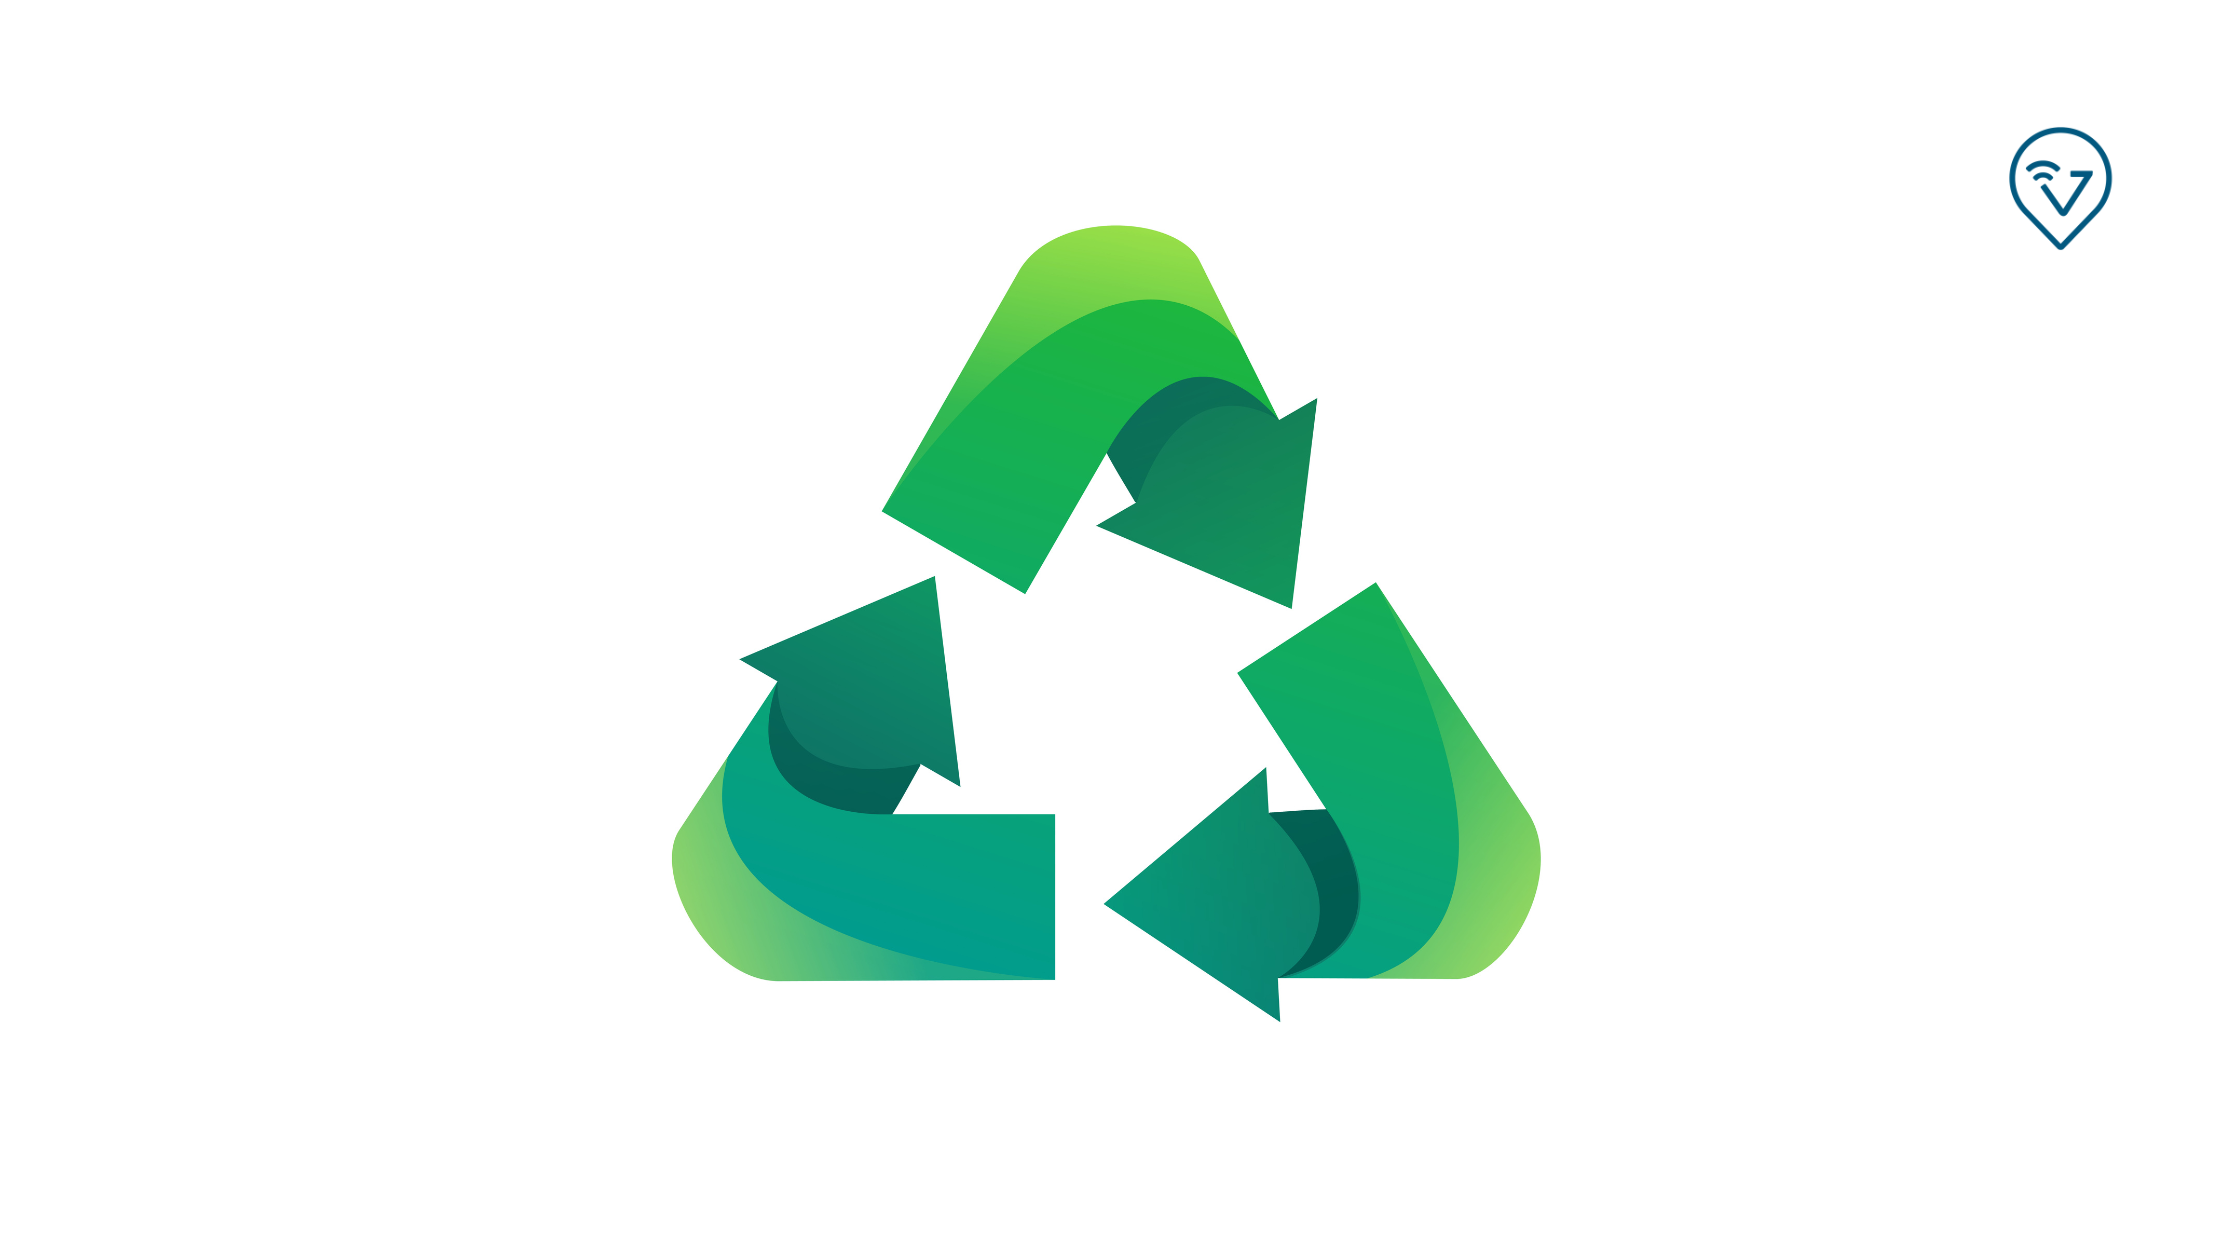 Logística verde: gestão de entregas com um menor impacto ambiental